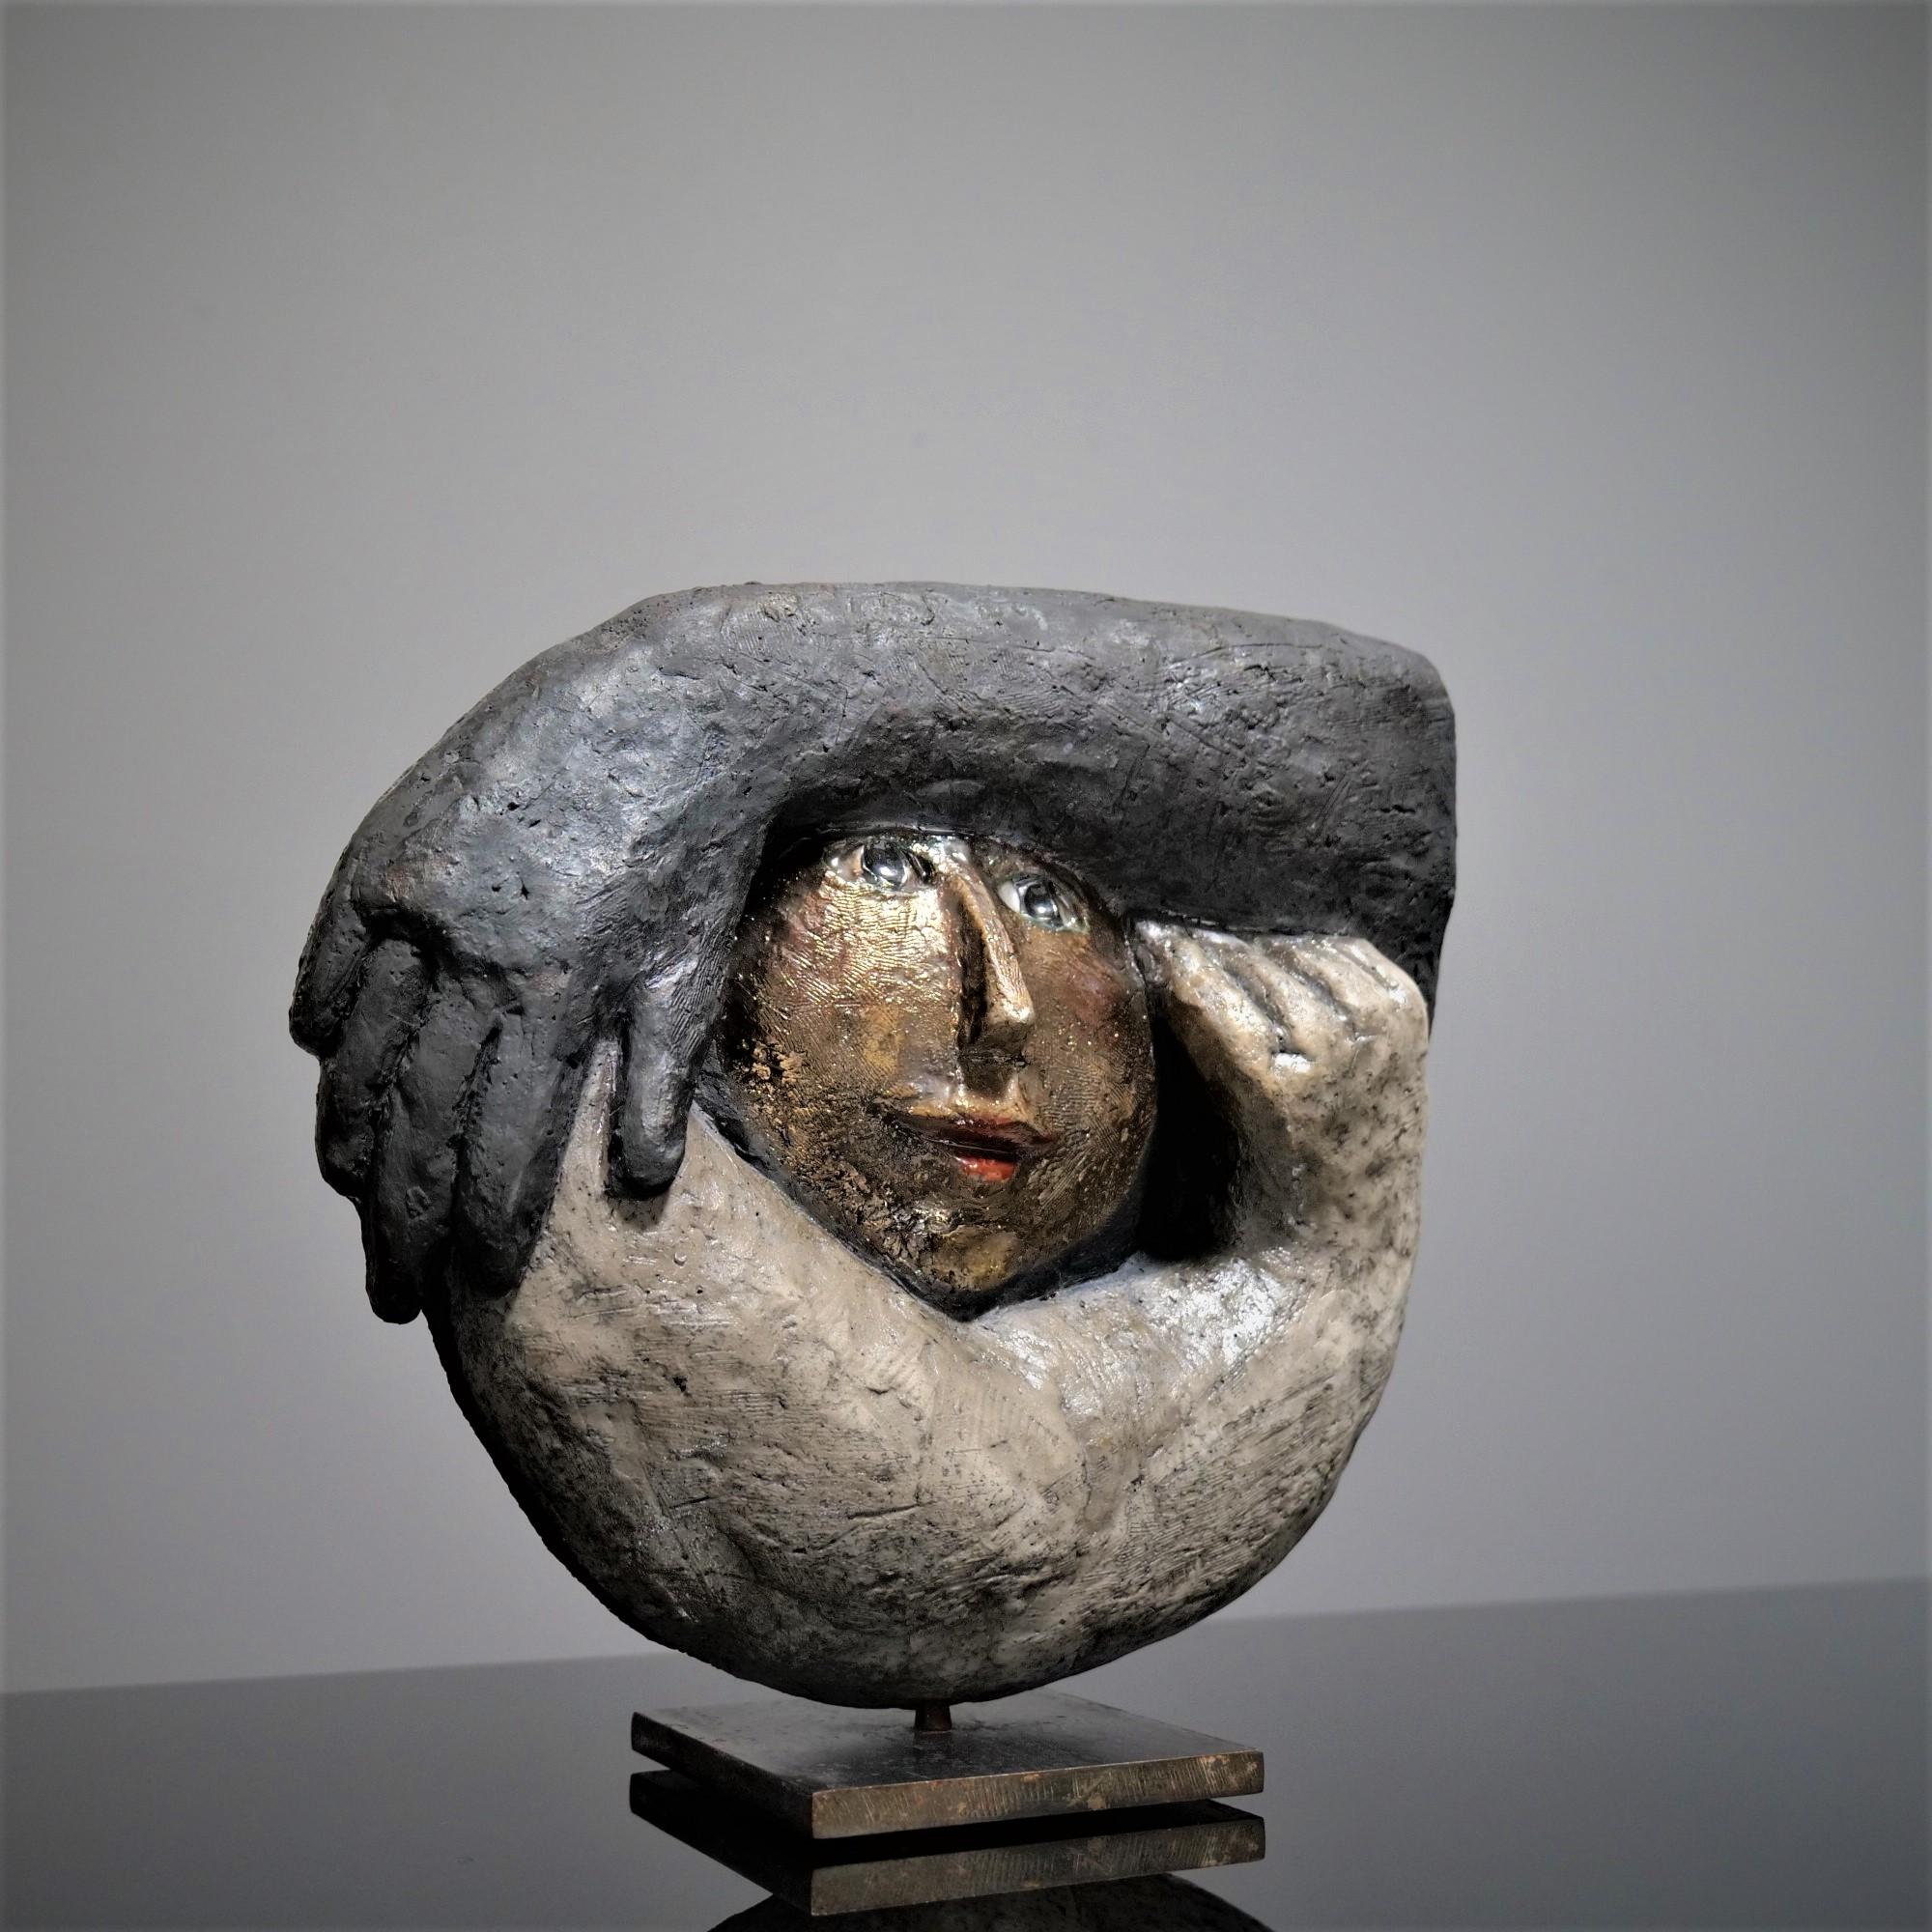 Contemporary Roger Capron, Double-sided ceramic “Kokon”, 2002